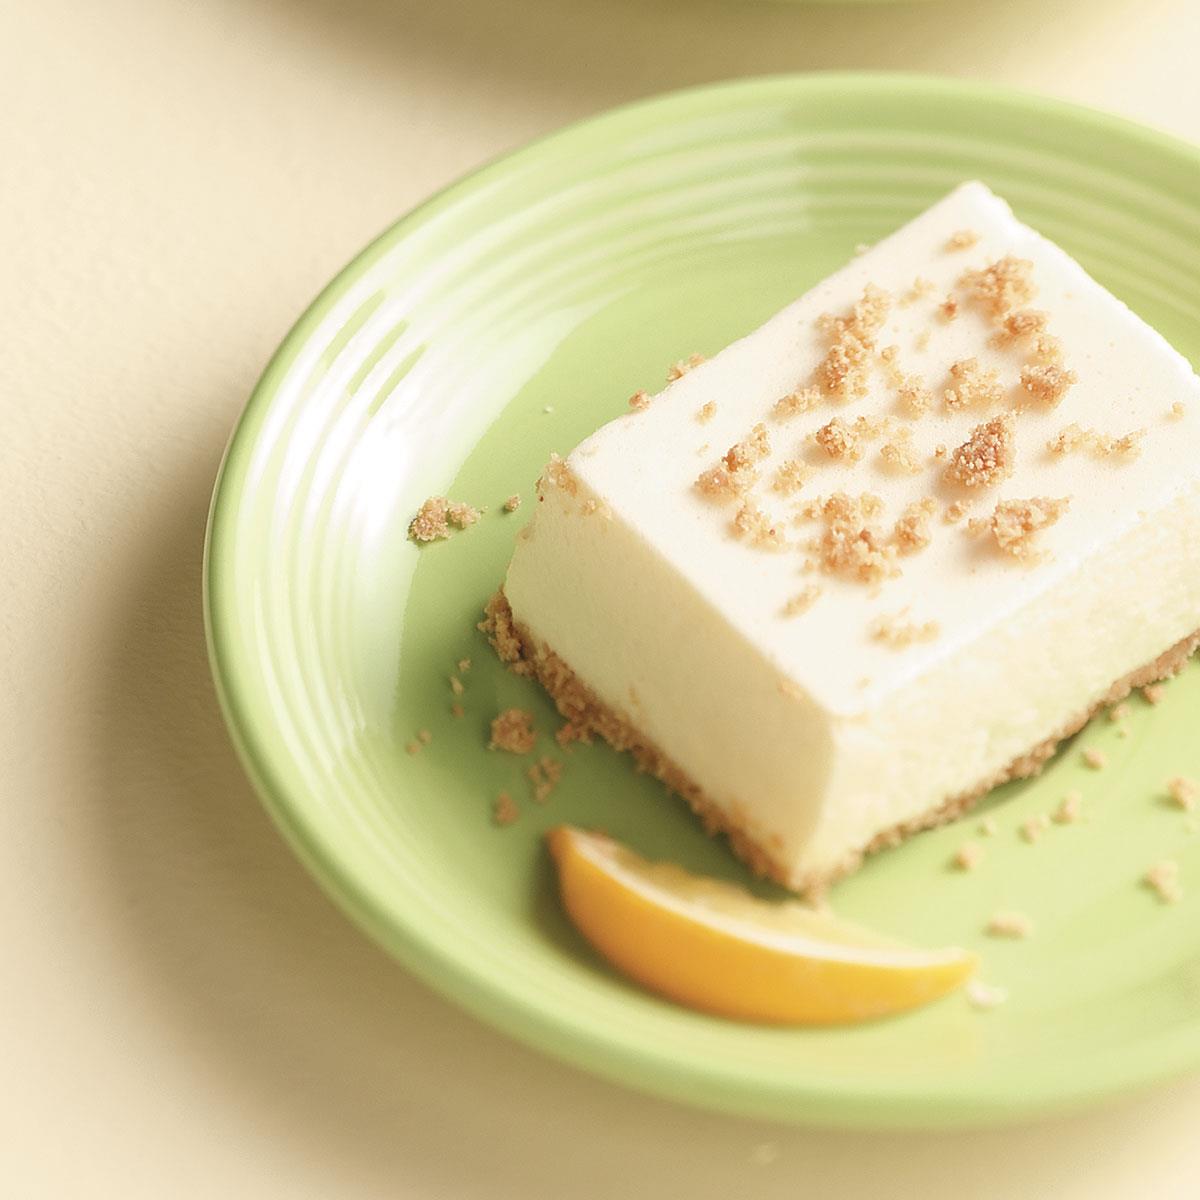 Light Lemon Fluff Dessert Recipe: How It